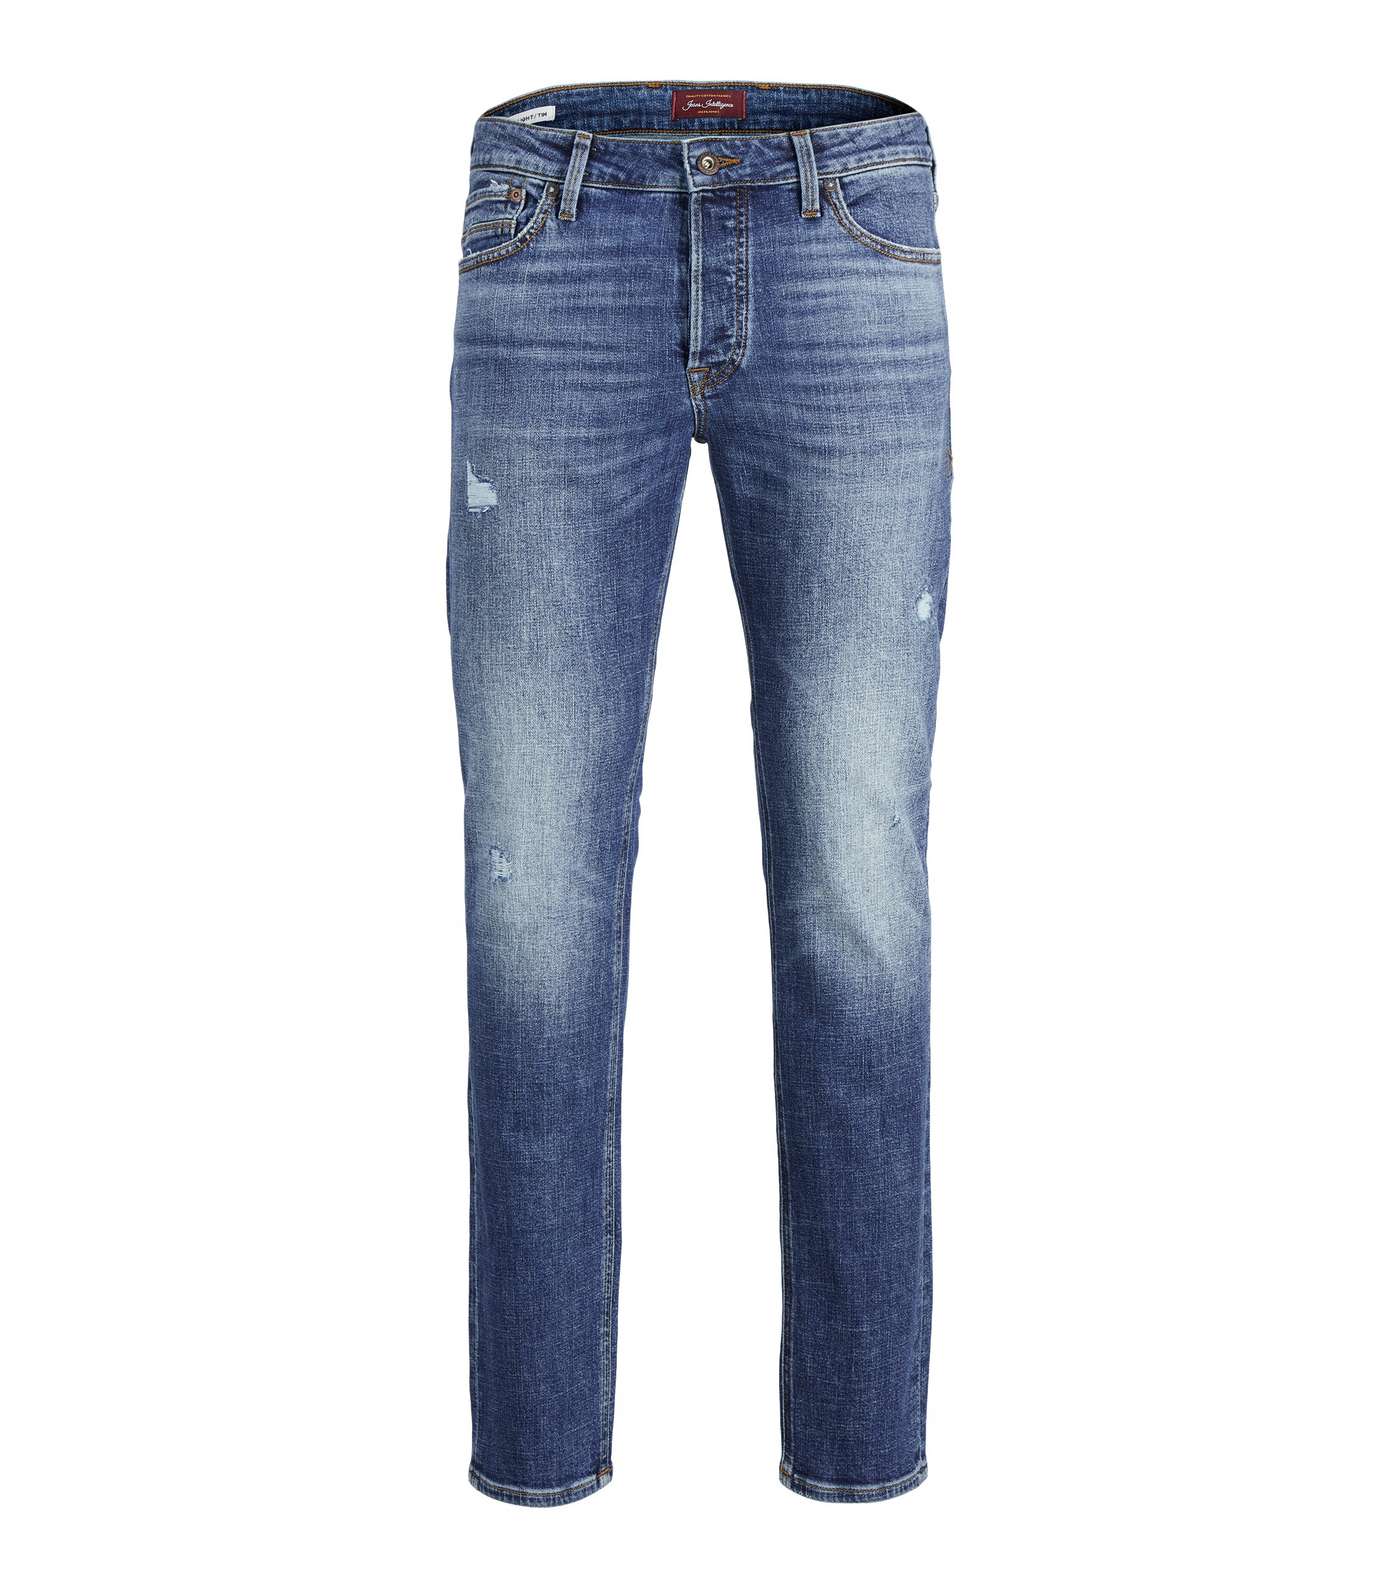 Jack & Jones Blue Vintage Ripped Regular Fit Jeans Image 5